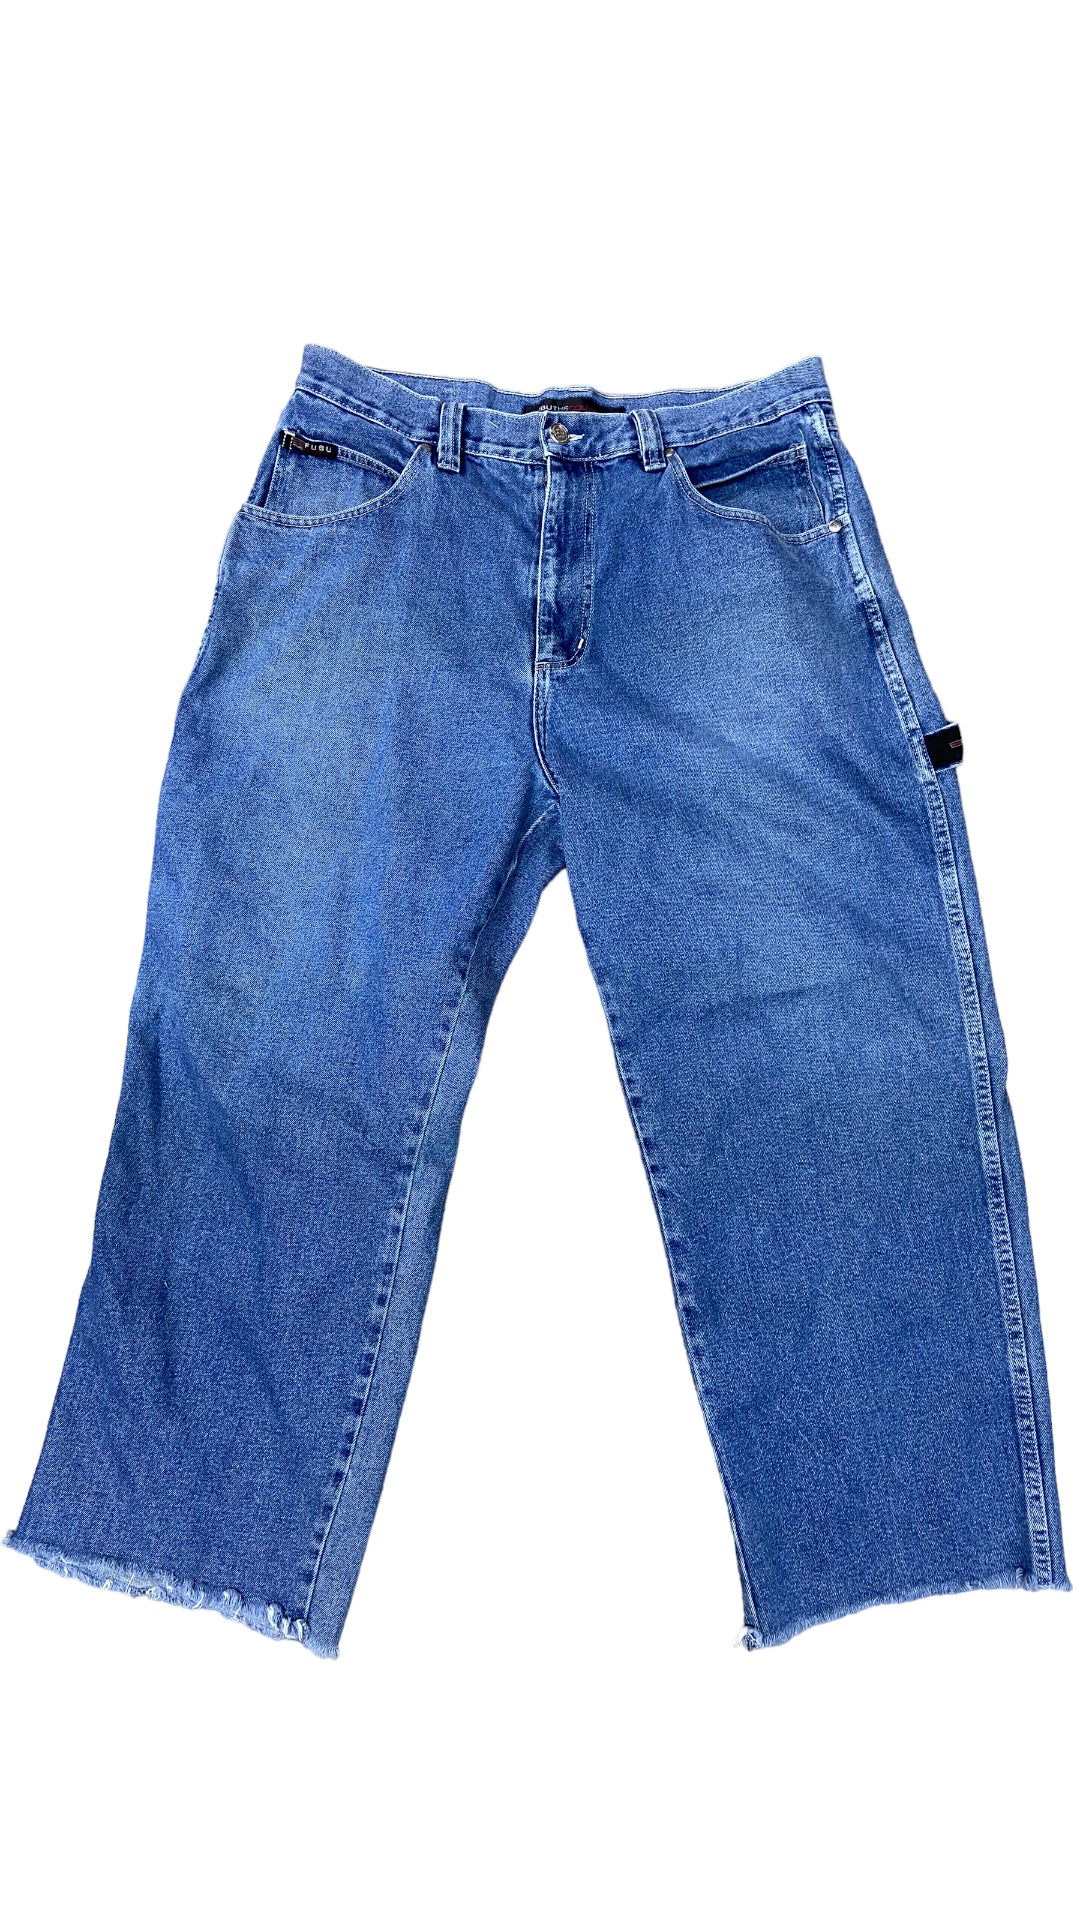 VTG Fubu Carpenter The Collection Jeans Sz 38x34